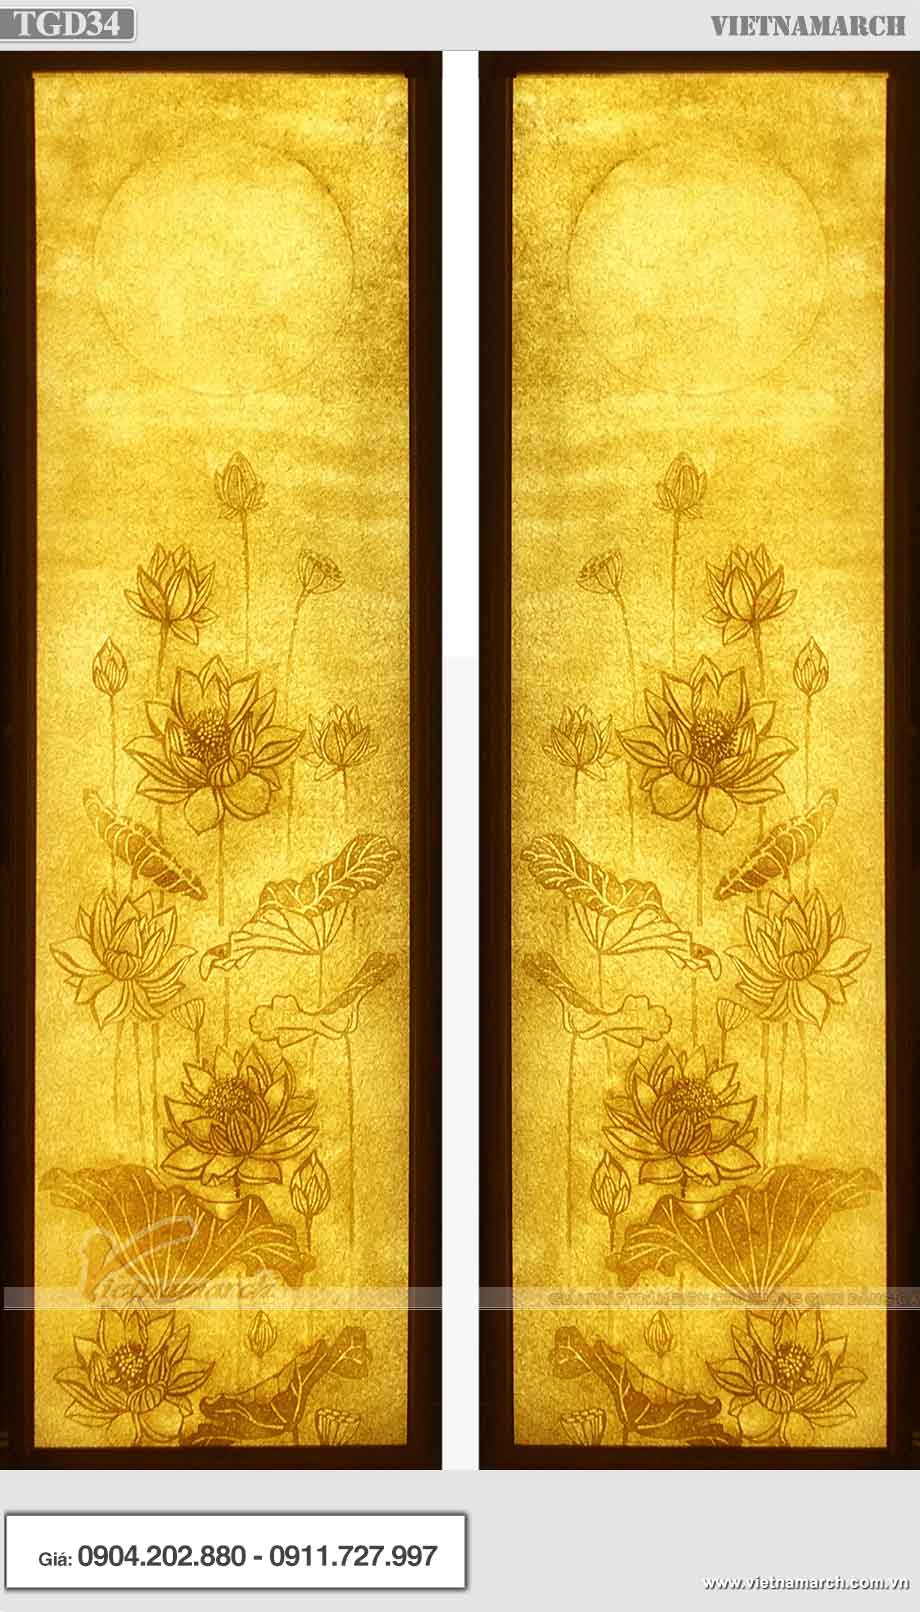 Mẫu tranh giấy dừa hoa sen hình chữ nhật - TGD34